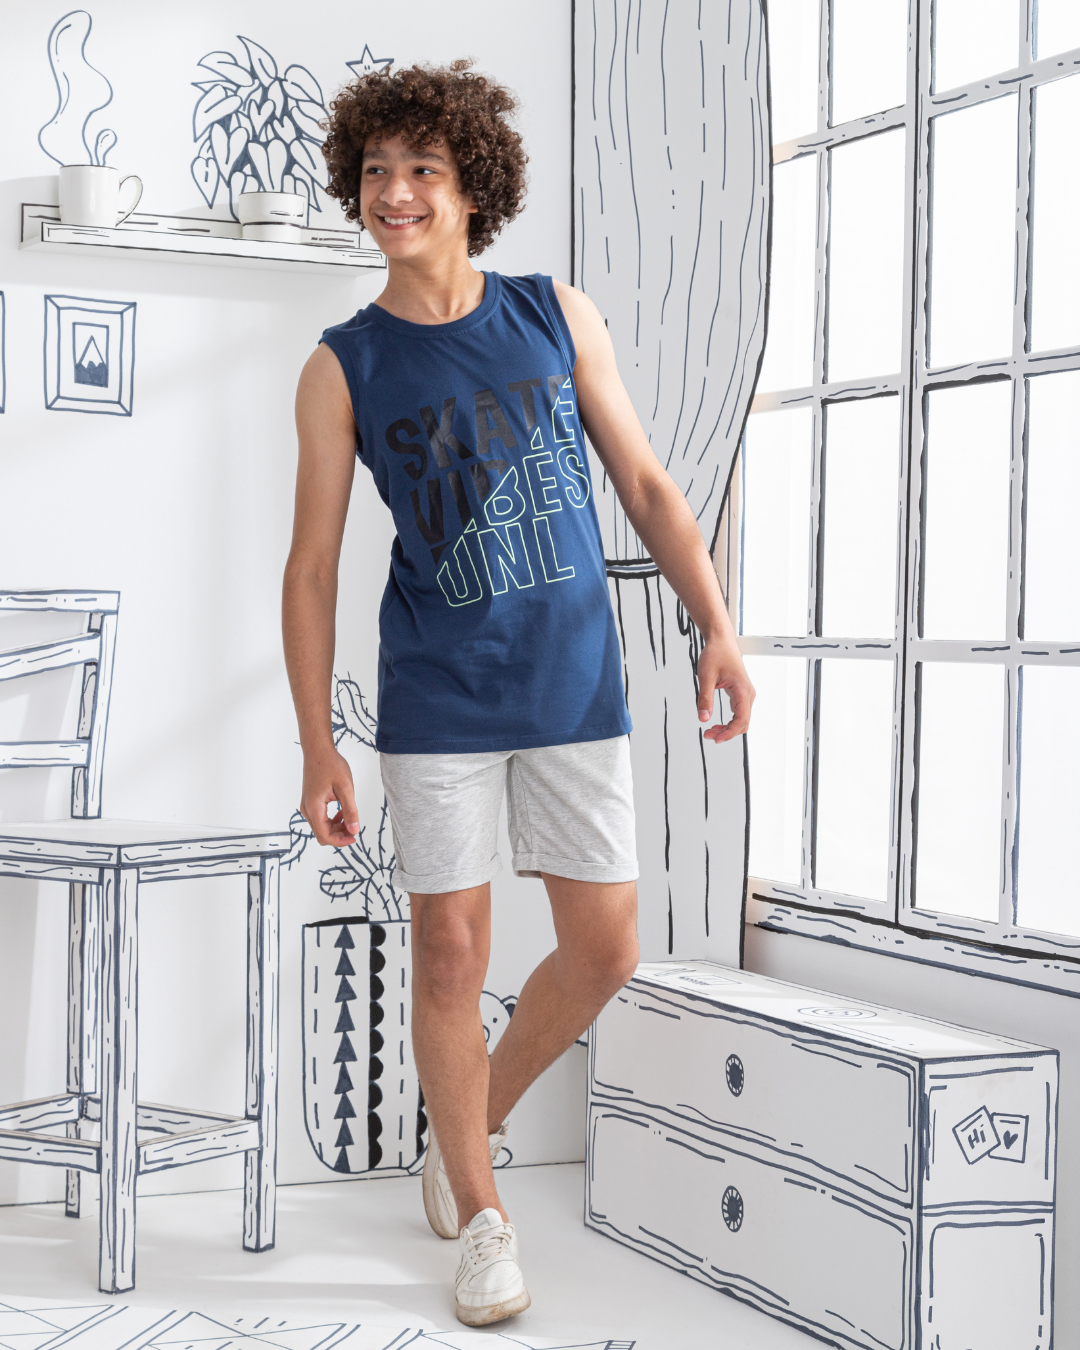 Skate Boys' pajamas, printed T-shirt and shorts